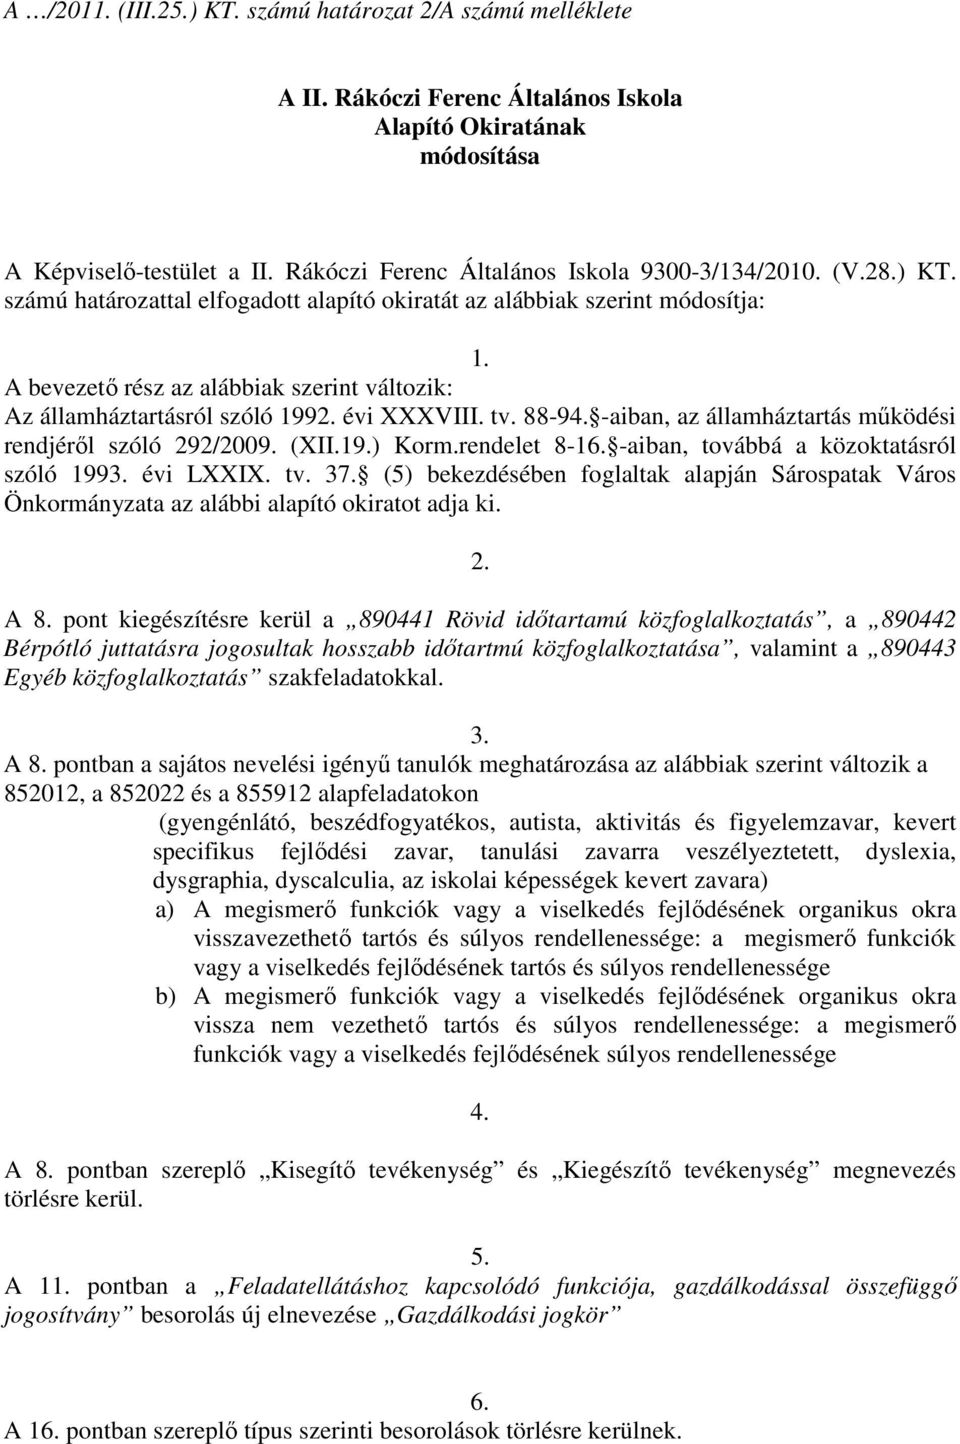 A bevezetı rész az alábbiak szerint változik: Az államháztartásról szóló 1992. évi XXXVIII. tv. 88-94. -aiban, az államháztartás mőködési rendjérıl szóló 292/2009. (XII.19.) Korm.rendelet 8-16.